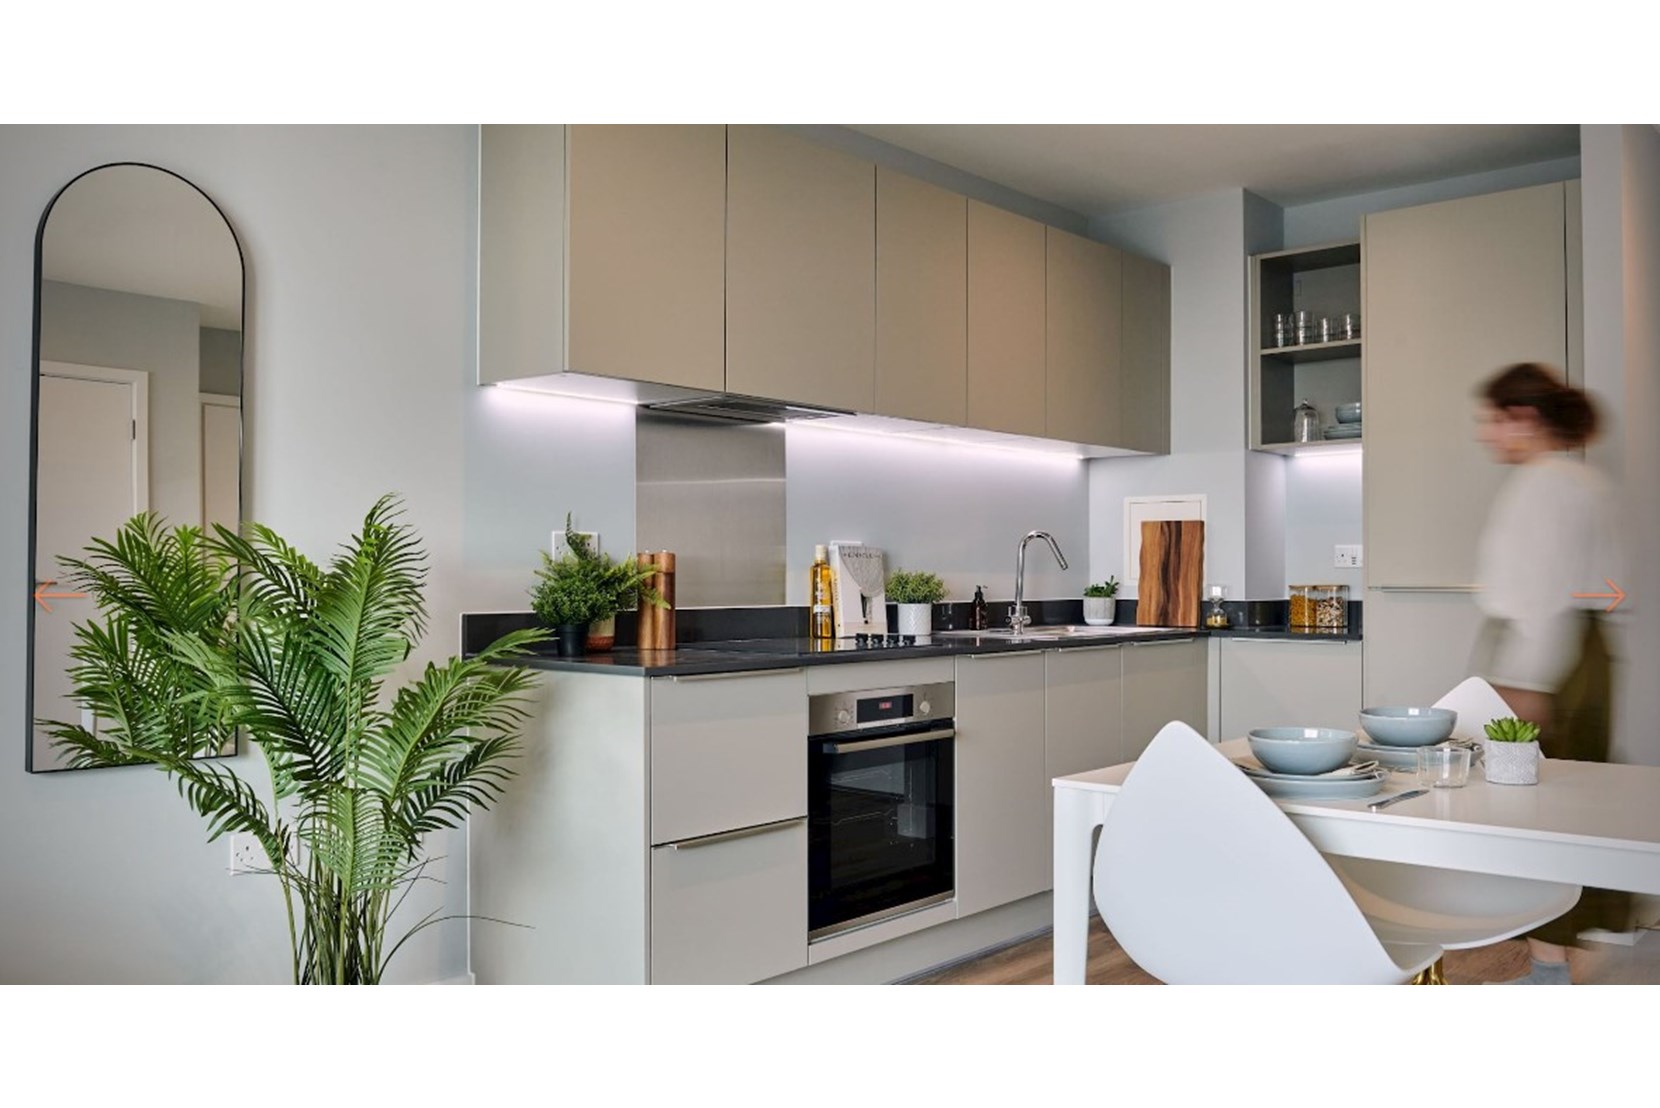 Apartment-APO-Group-Kew-Bridge-Hounslow-Greater-London-Interior-Kitchen